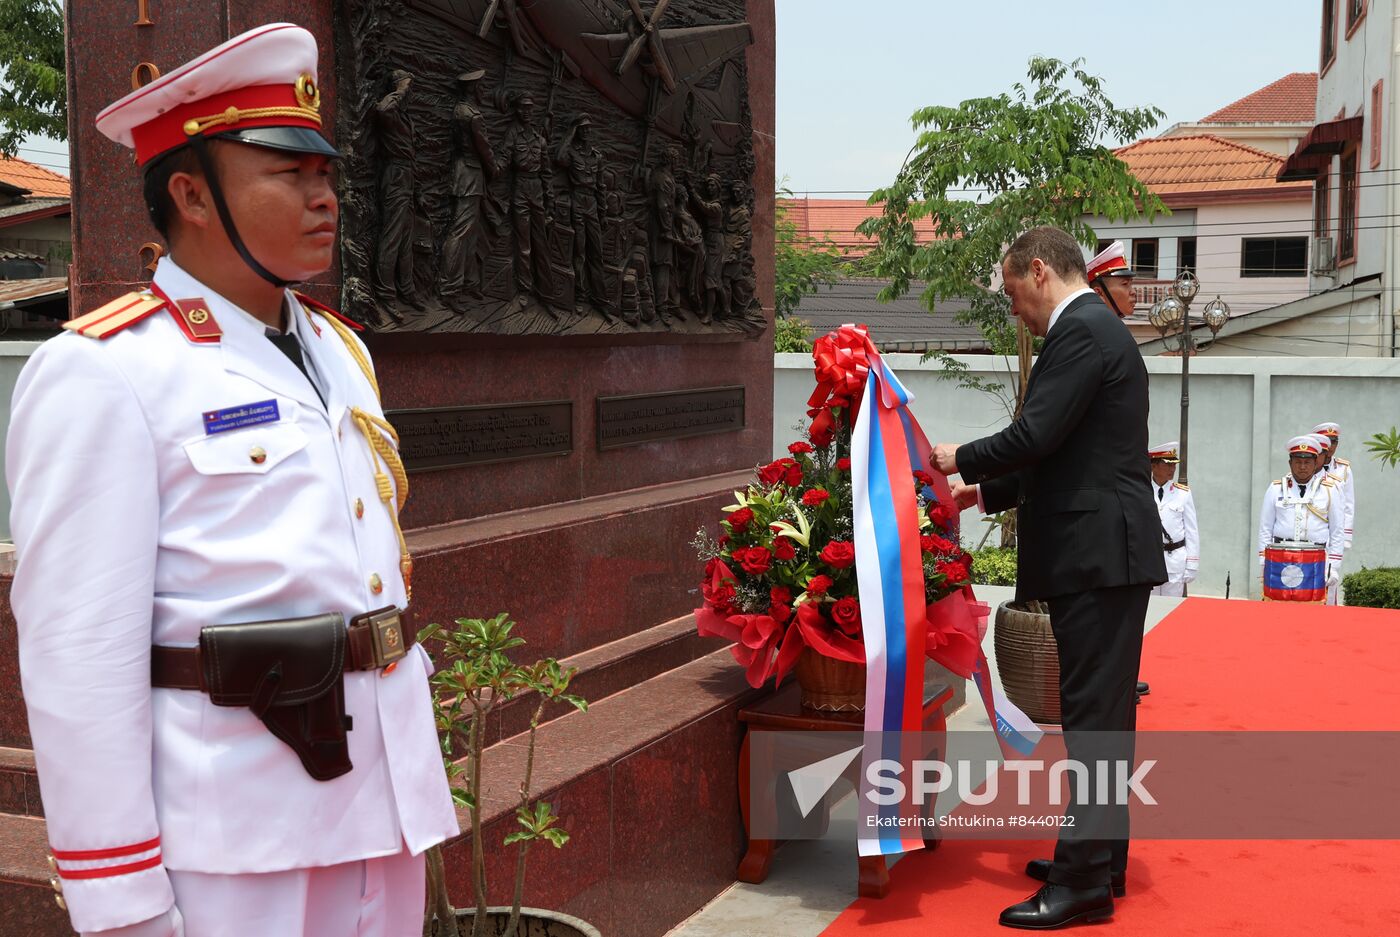 russia visit laos